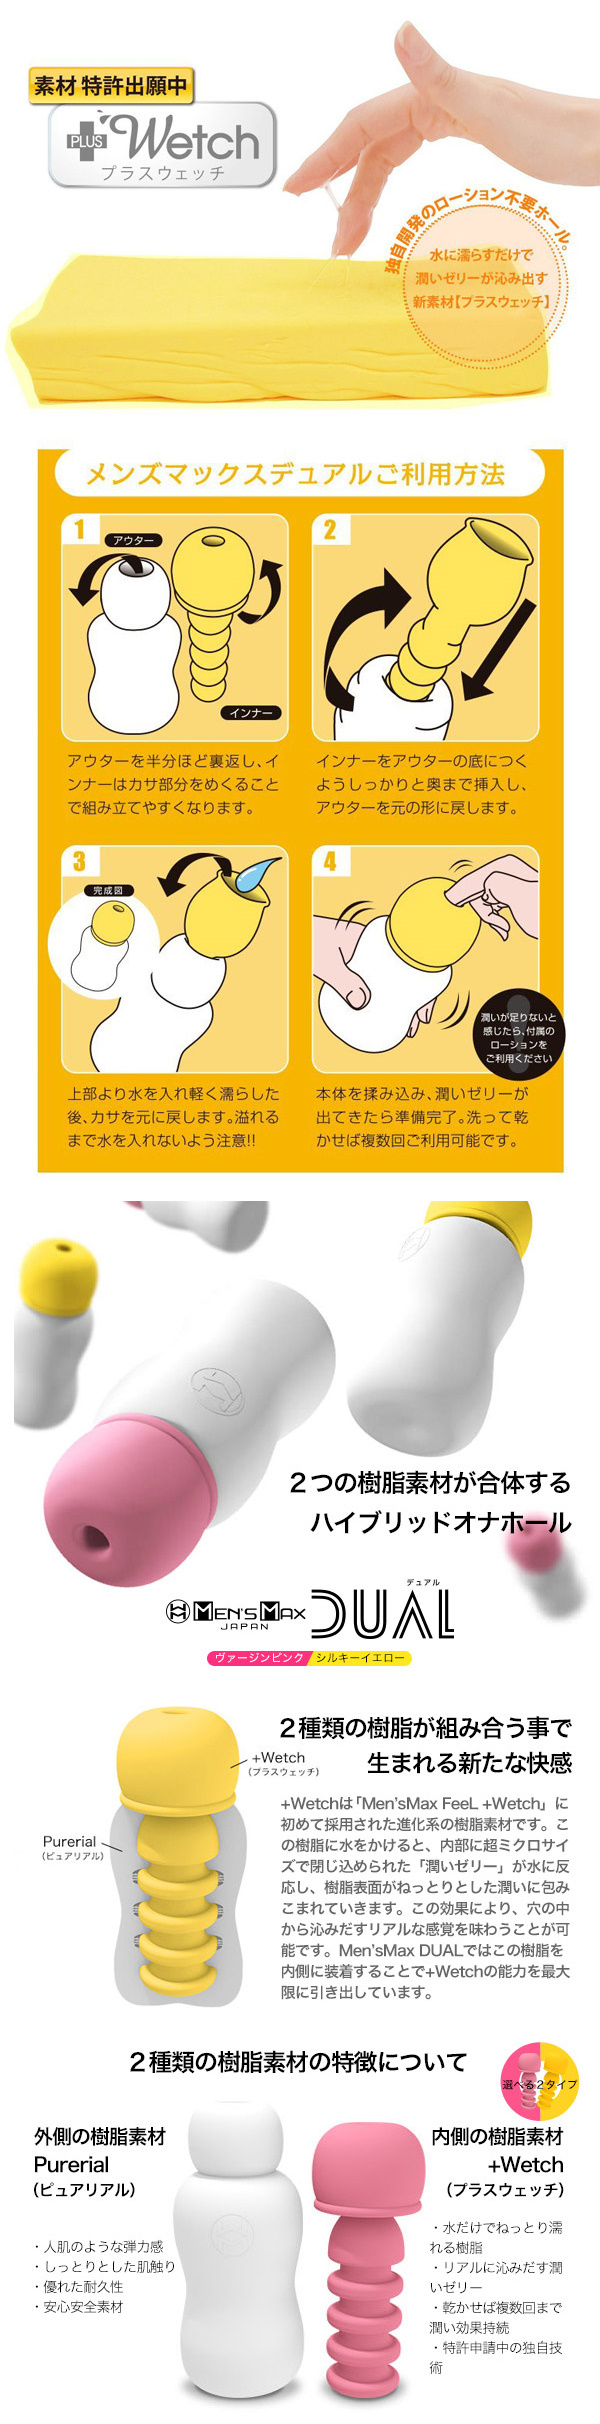 日本MENS MAX‧DUAL シルキーイエロー 雙層構造組合式自慰器-黃